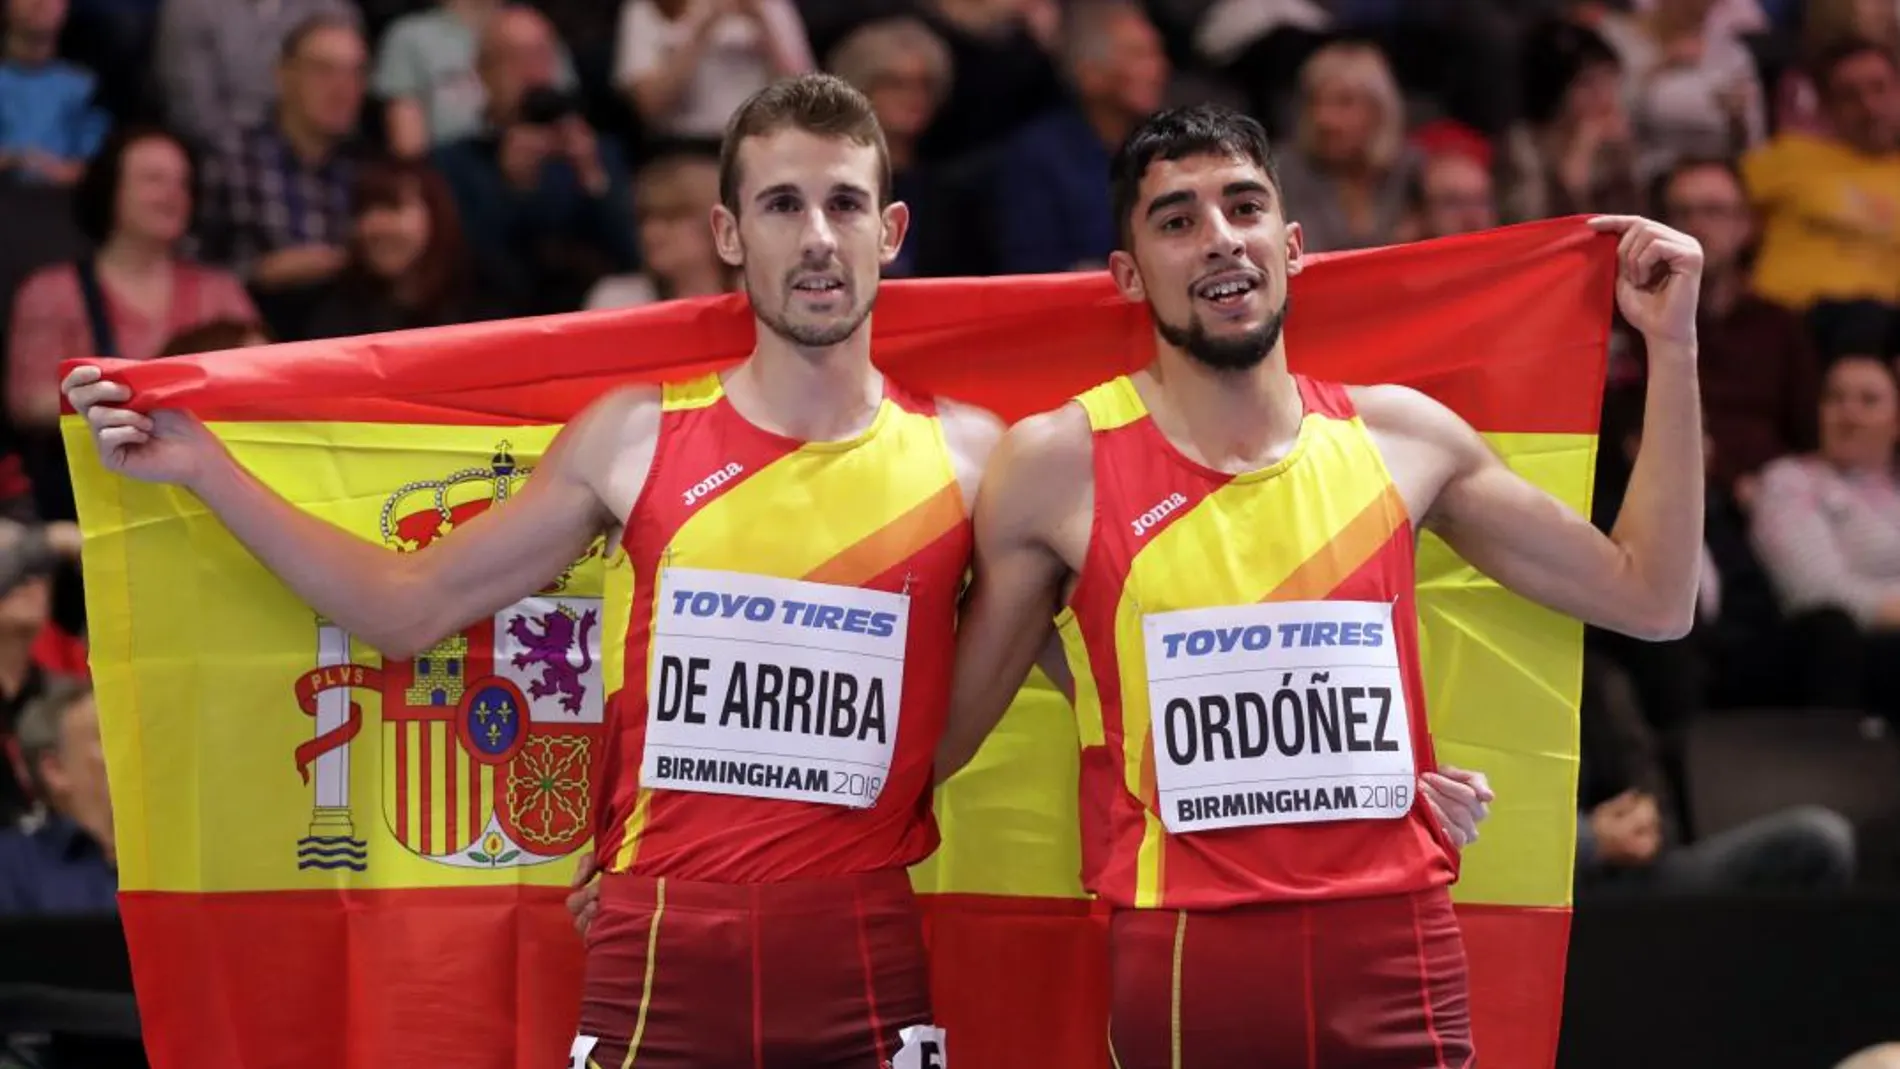 Saul Ordonez, plata, junto al también español Alvaro De Arriba, cuarto, tras la prueba de 800 metros. Ap